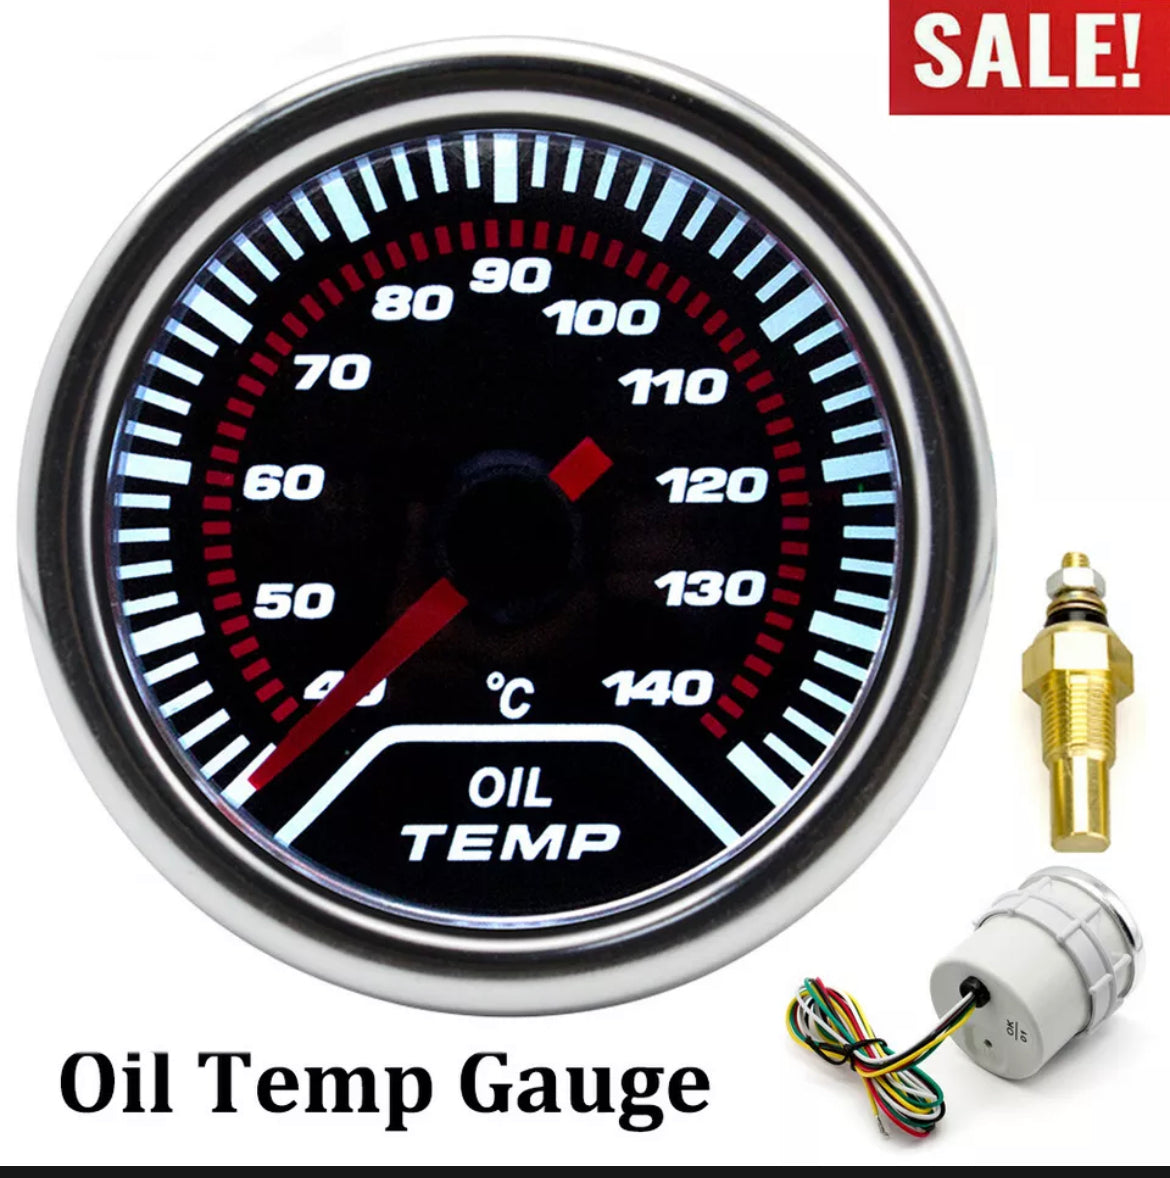 Oil Temp gauge & pod